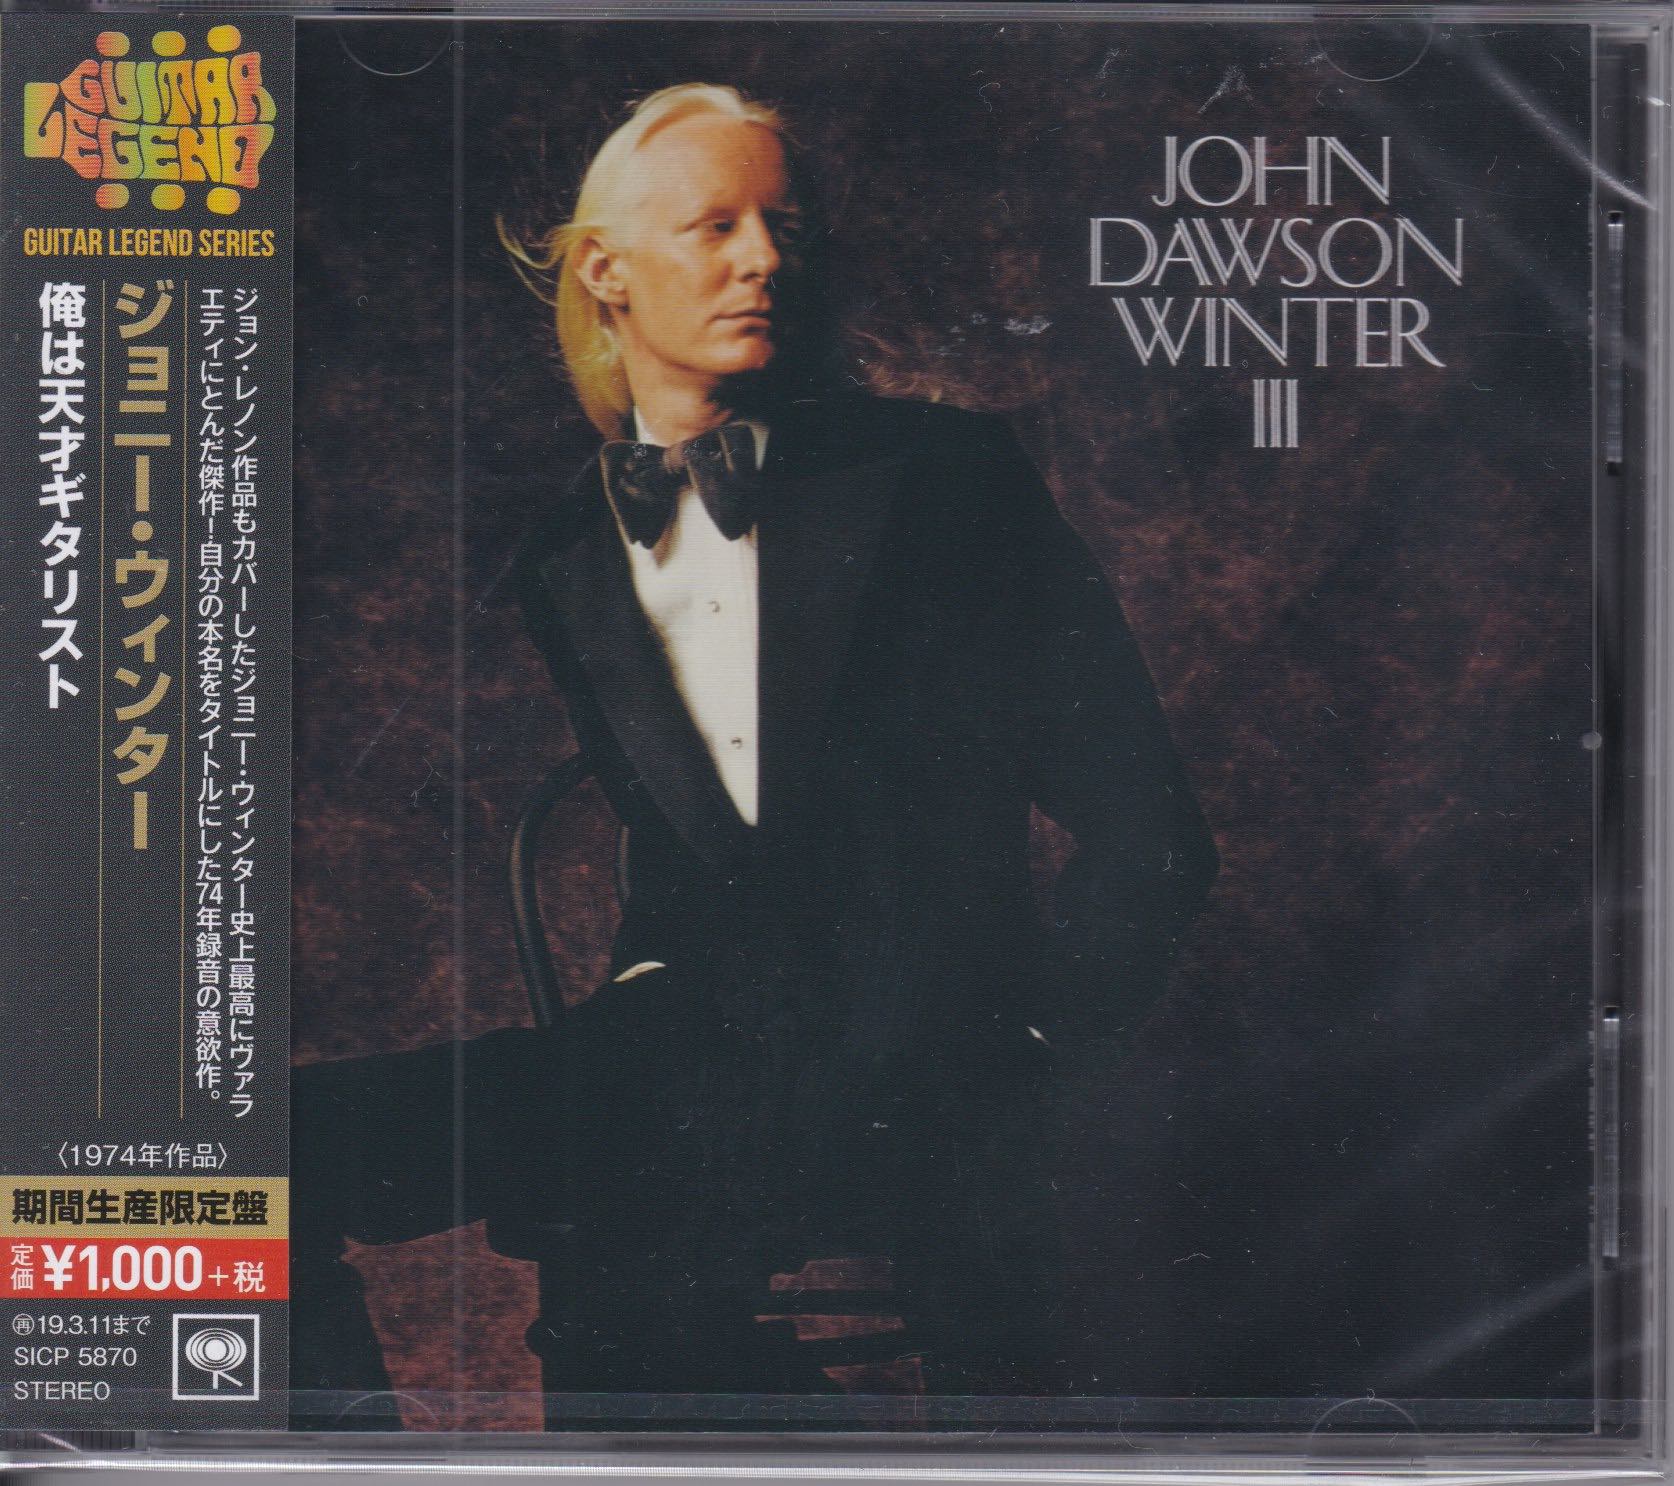 John Dawson Winter  ‎– John Dawson Winter III